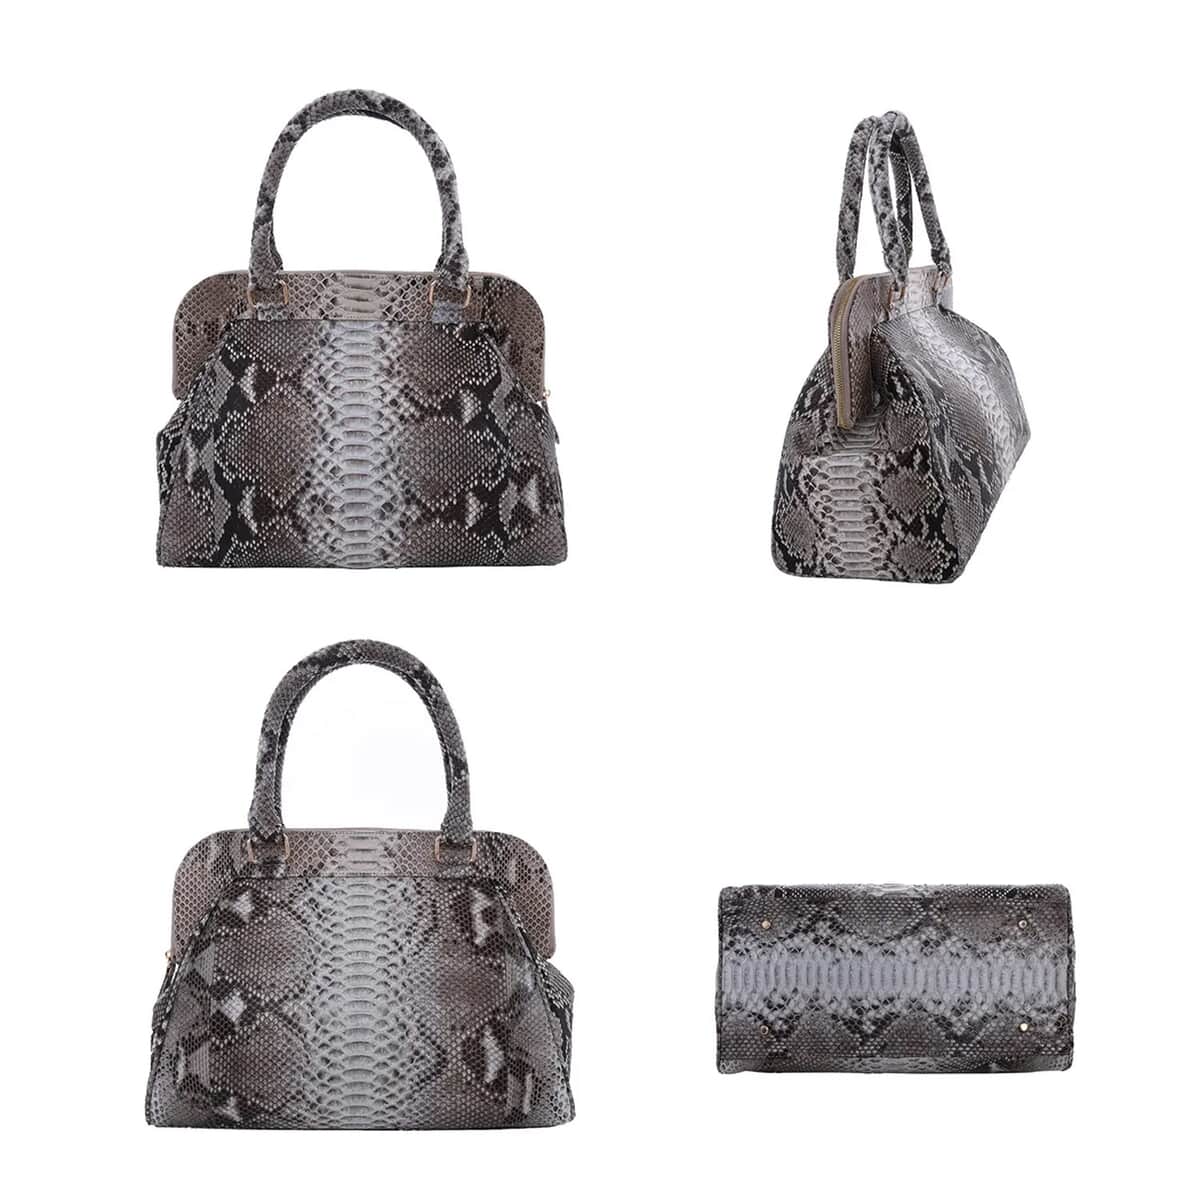 The Pelle Python Skin Bag Collection Natural Color 100% Genuine Python Leather Tote Bag for Women, Satchel Purse, Shoulder Handbag, Designer Tote Bag image number 3